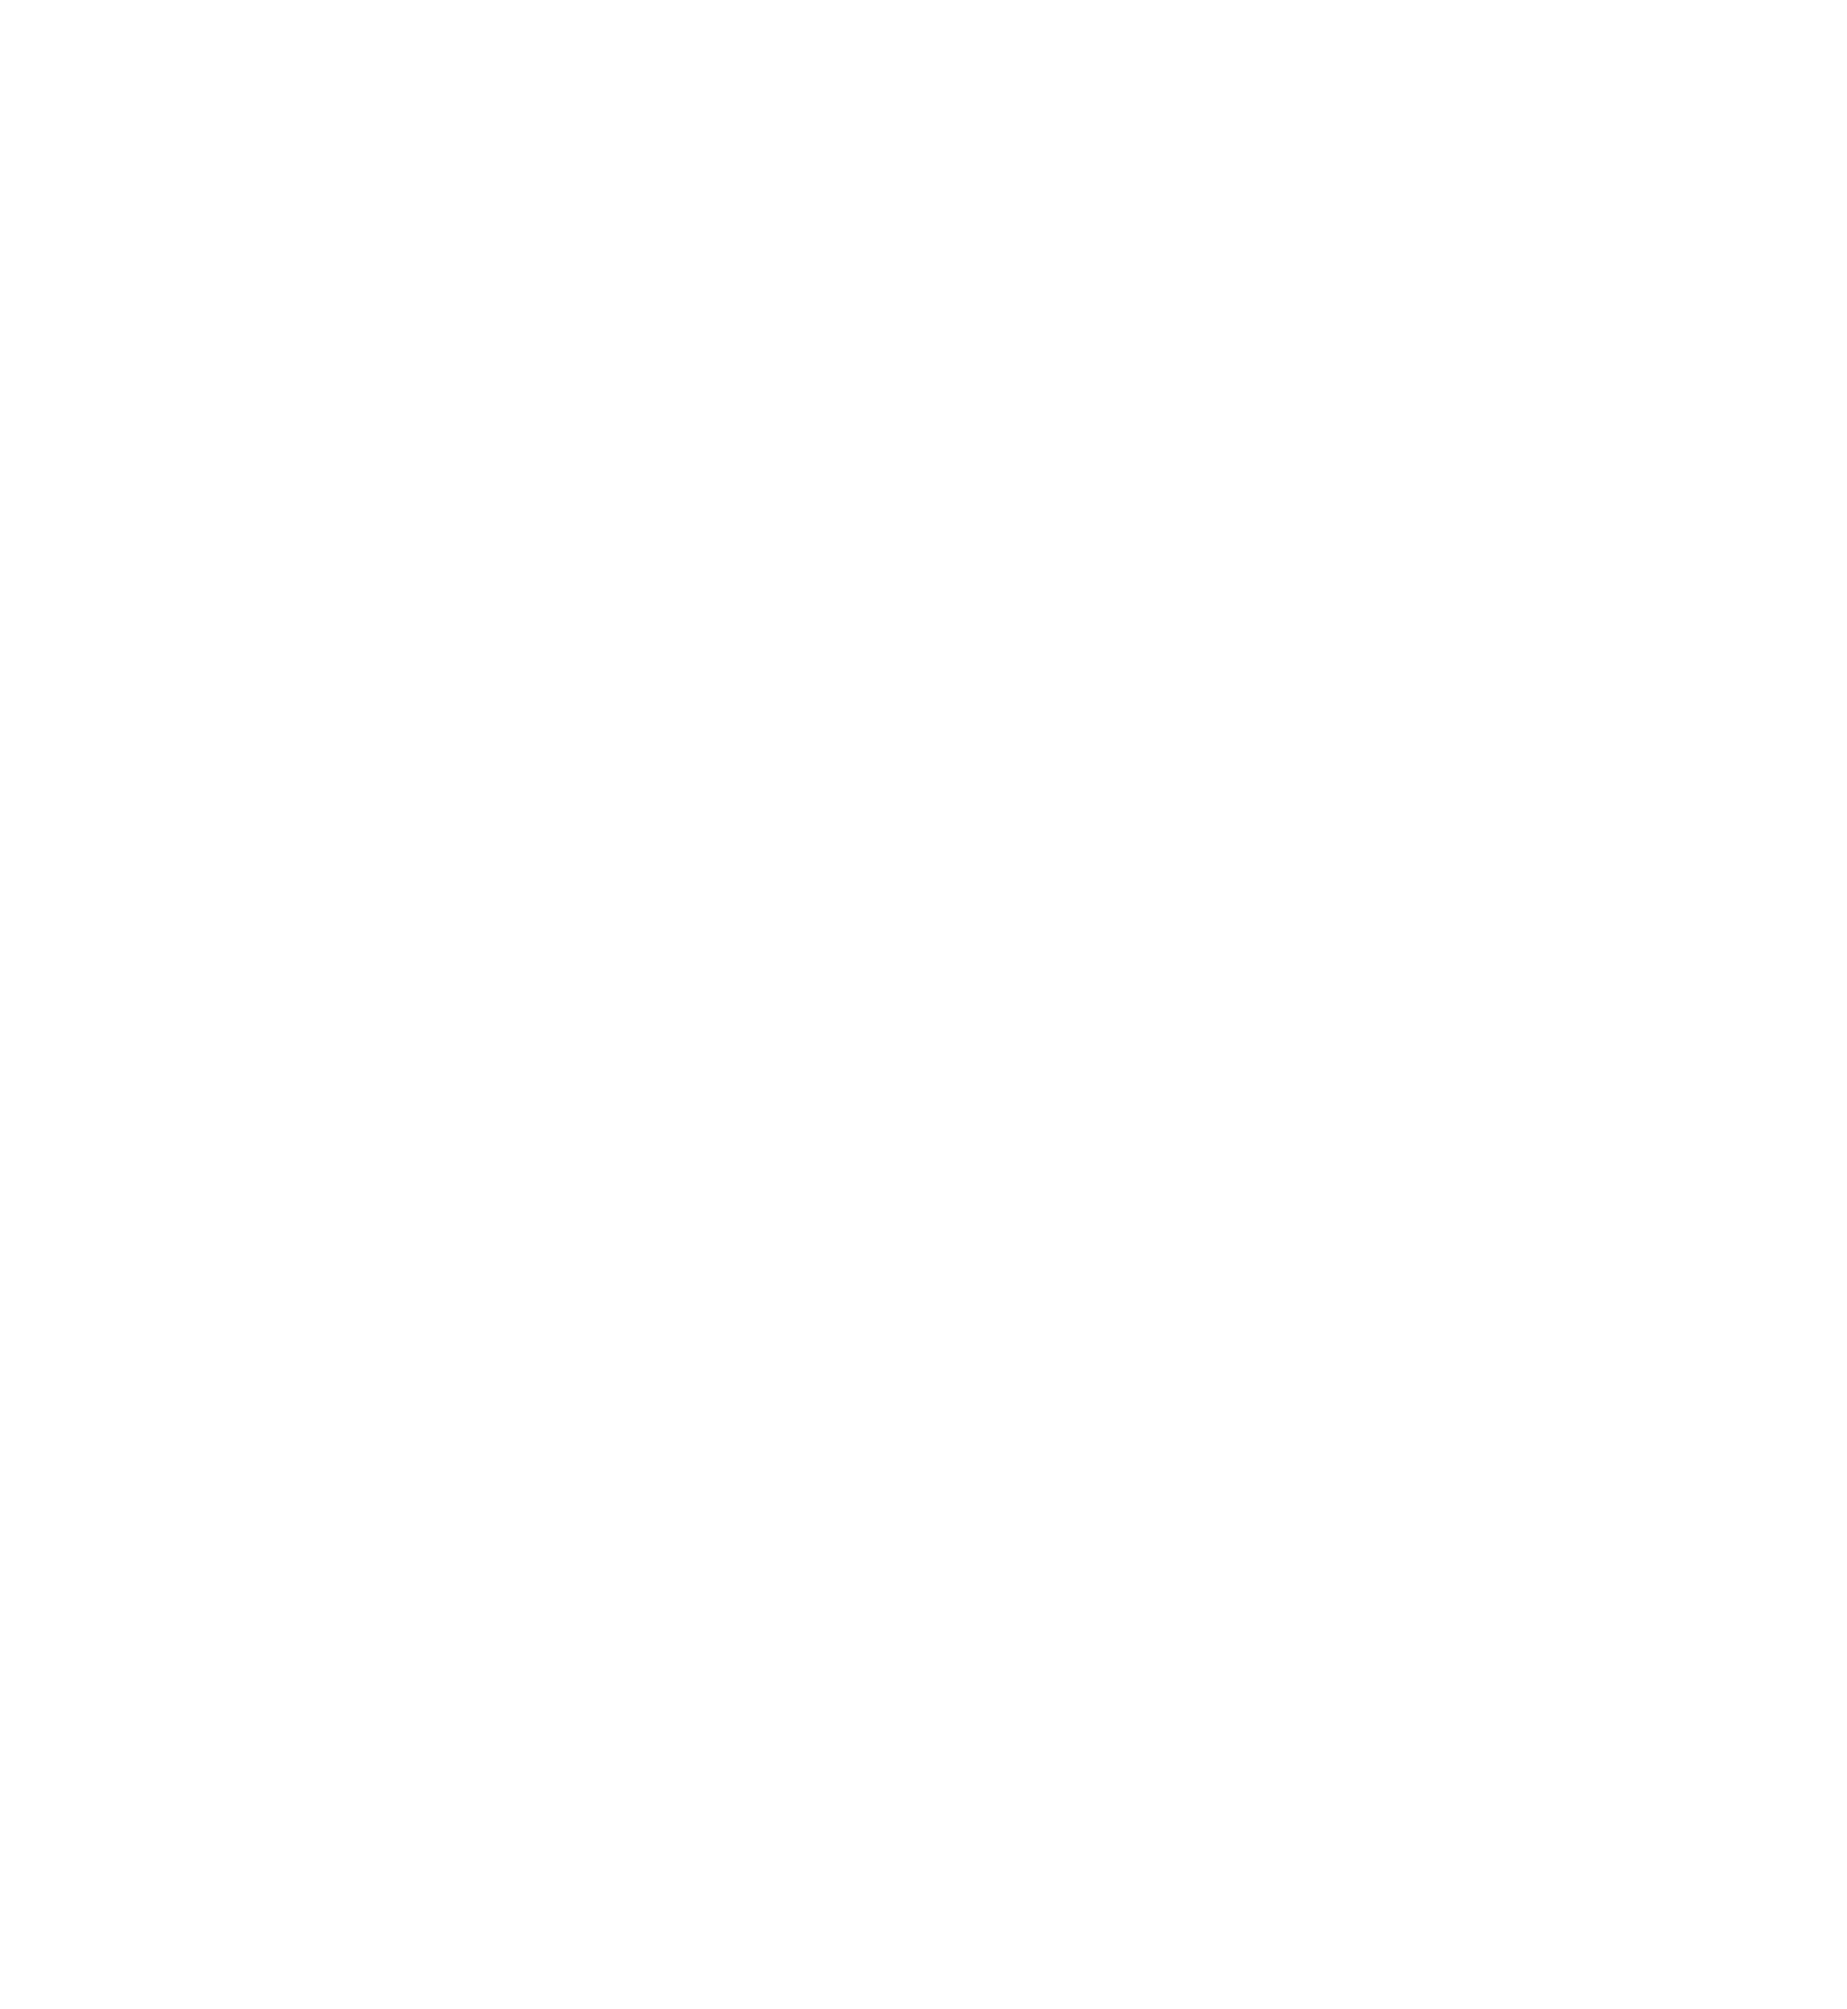 Catholic Education Western Australia Limited